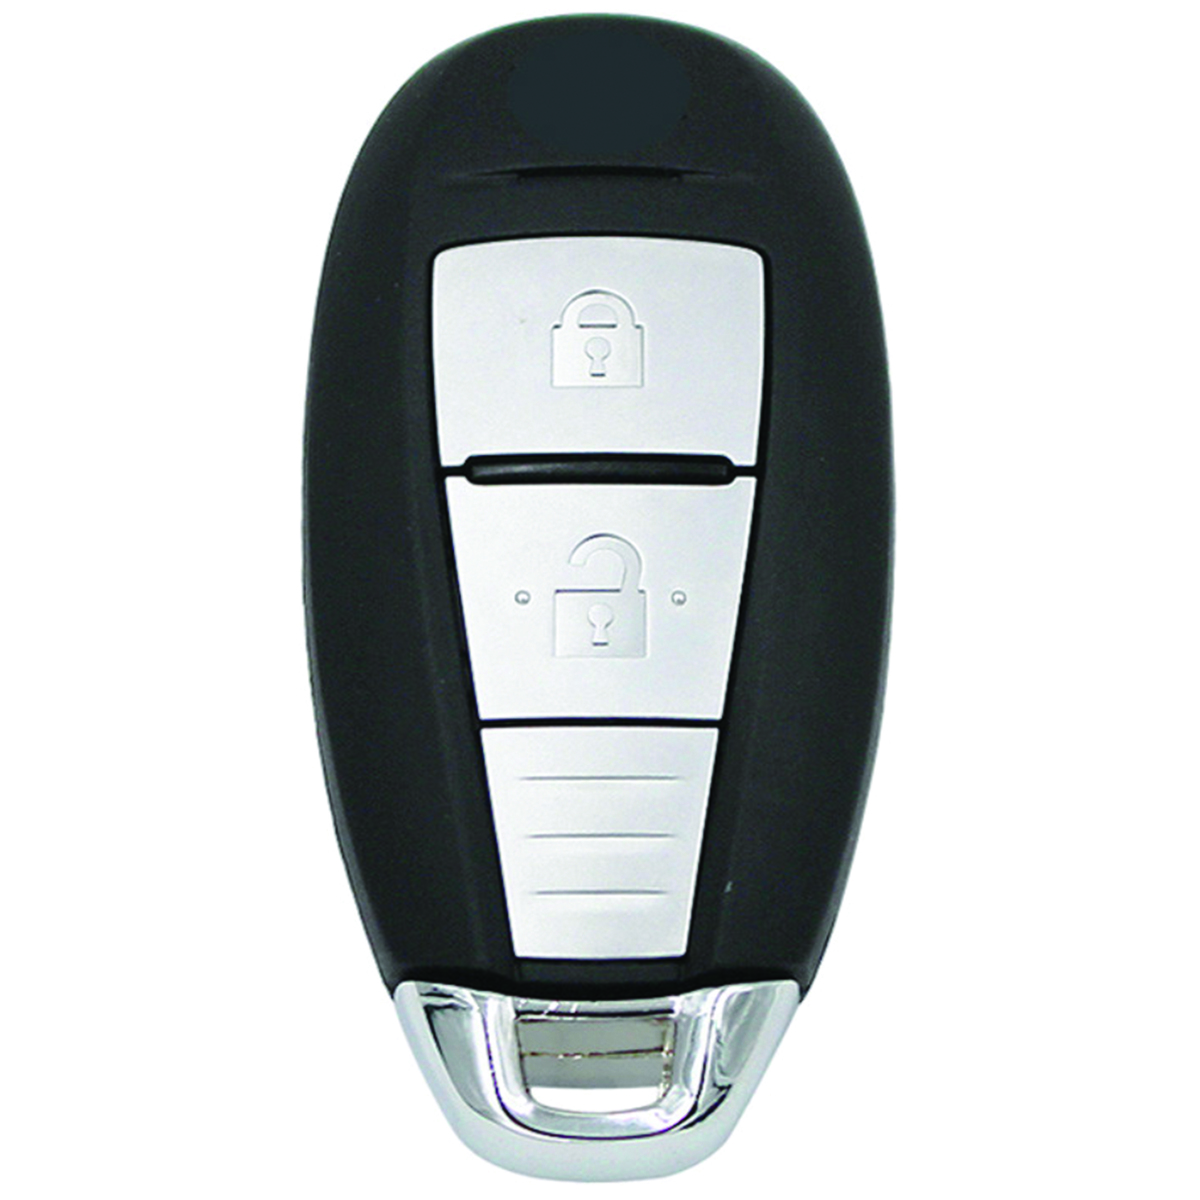 Genuine Suzuki Smart Key ID46 433MHZ FSK 